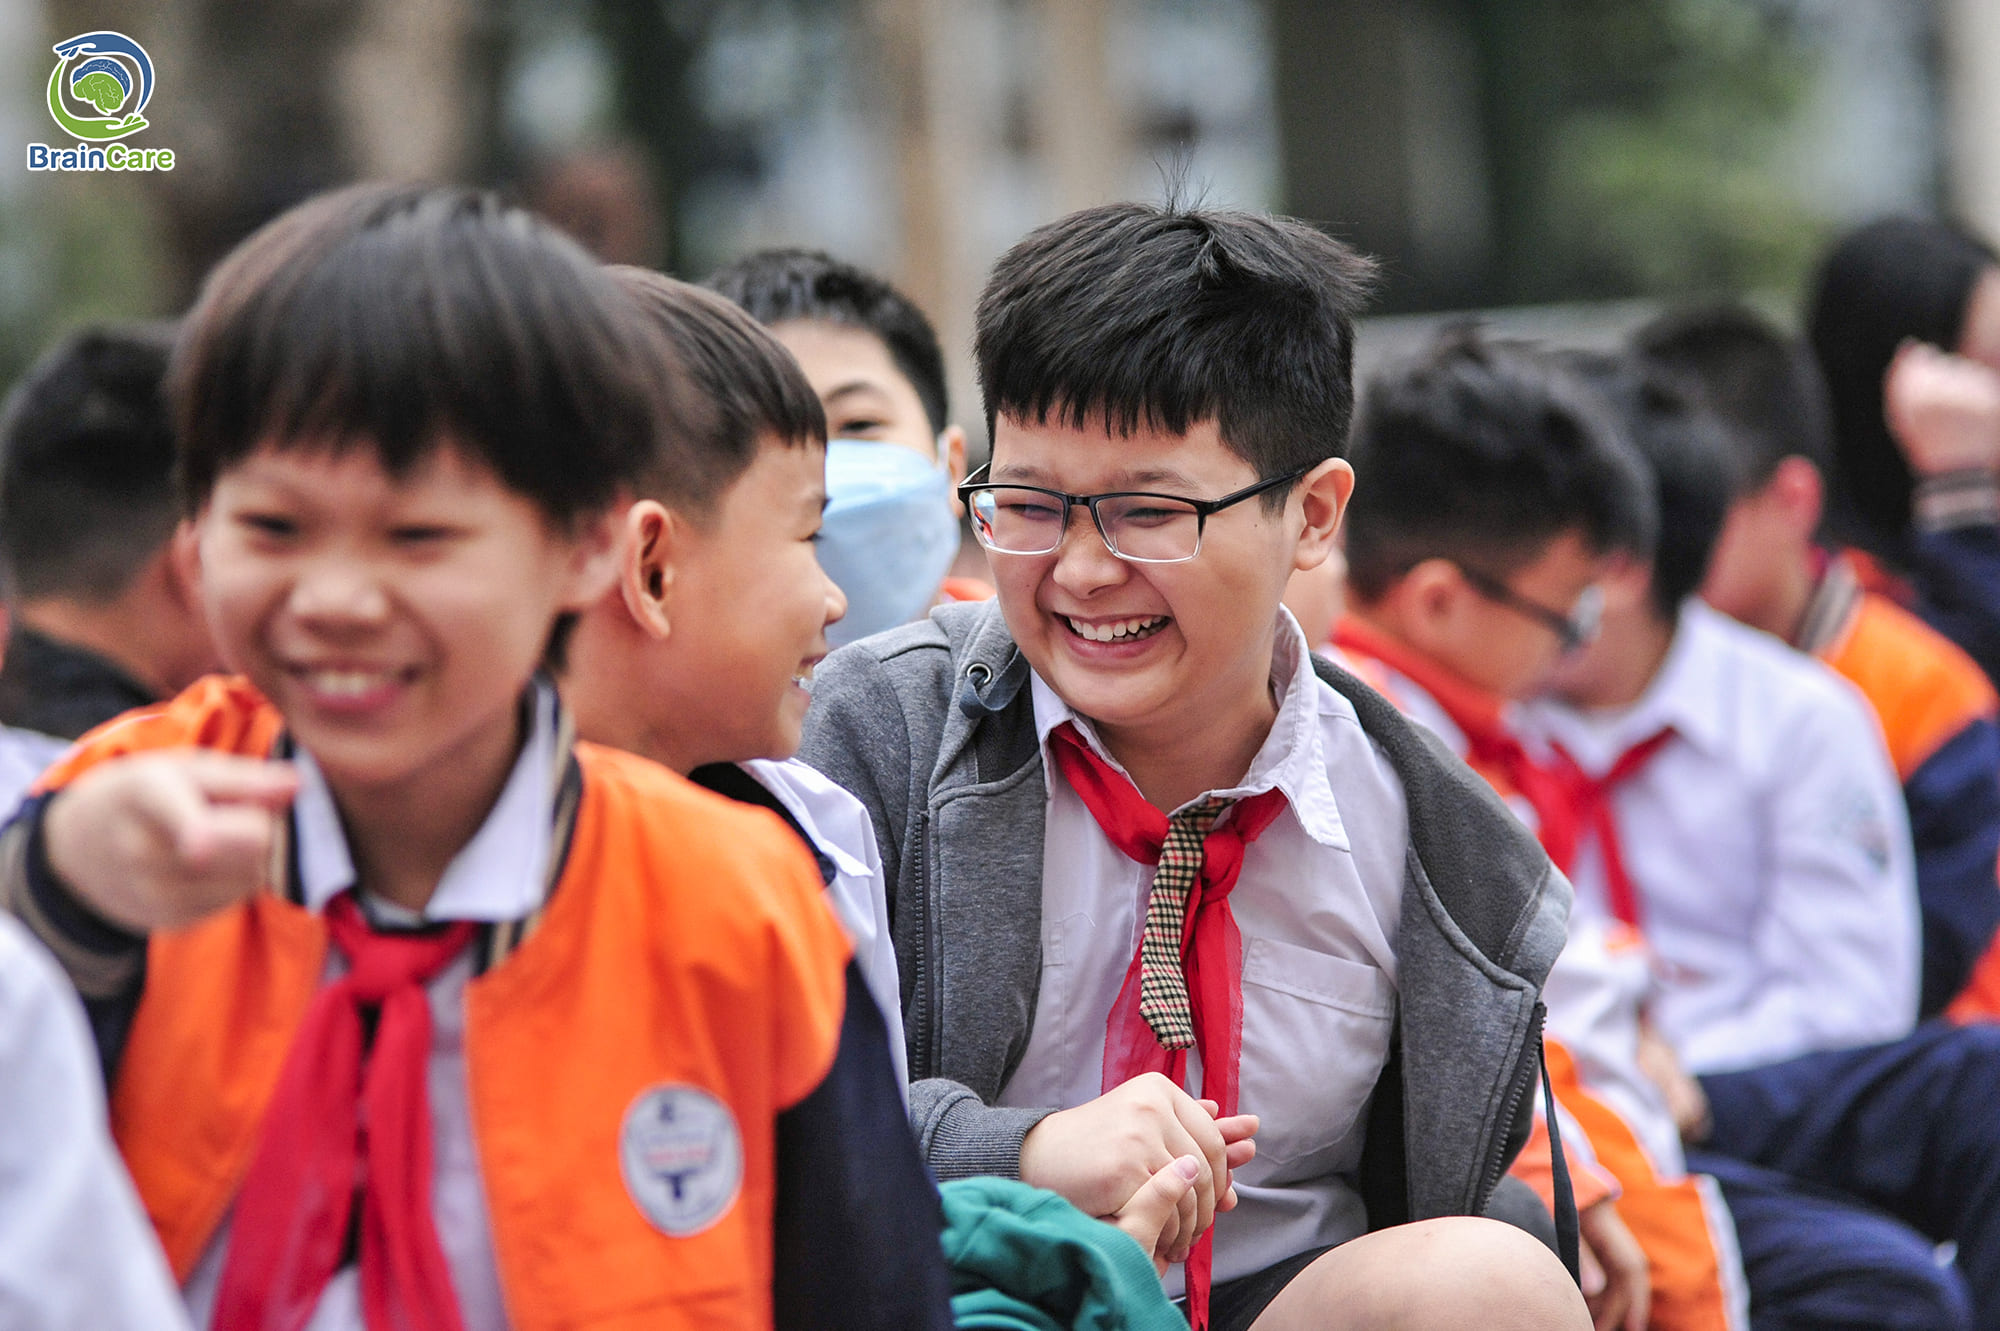 Học sinh trường Tiểu học Nghĩa Tân hào hứng trong chuyên đề "Làm chủ cảm xúc"